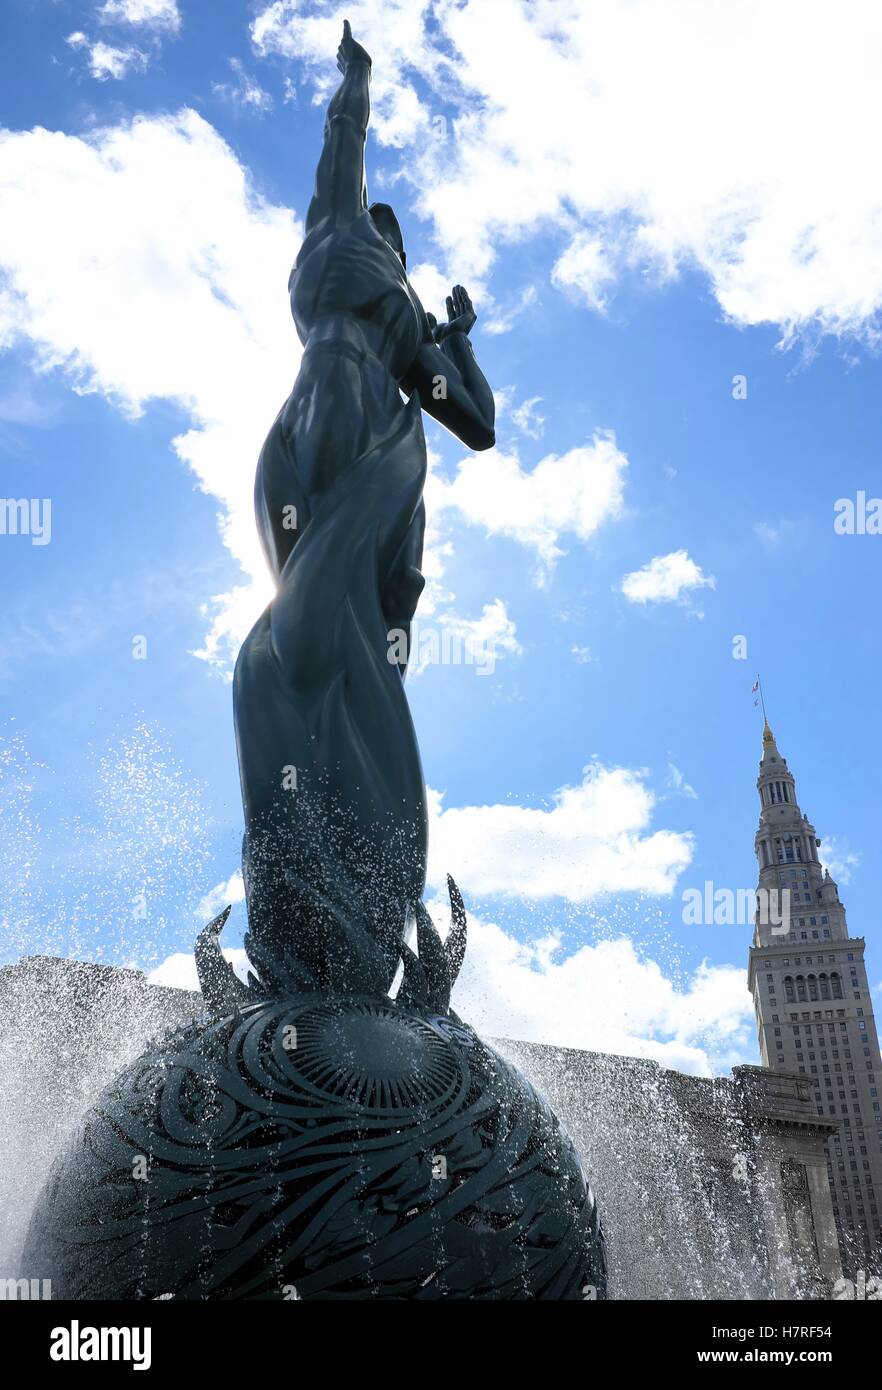 Der Brunnen des ewigen Lebens, auch als war Memorial Fountain bekannt, von Marshall Fredericks ist seit 1964 ein Wahrzeichen von Cleveland, Ohio Stockfoto